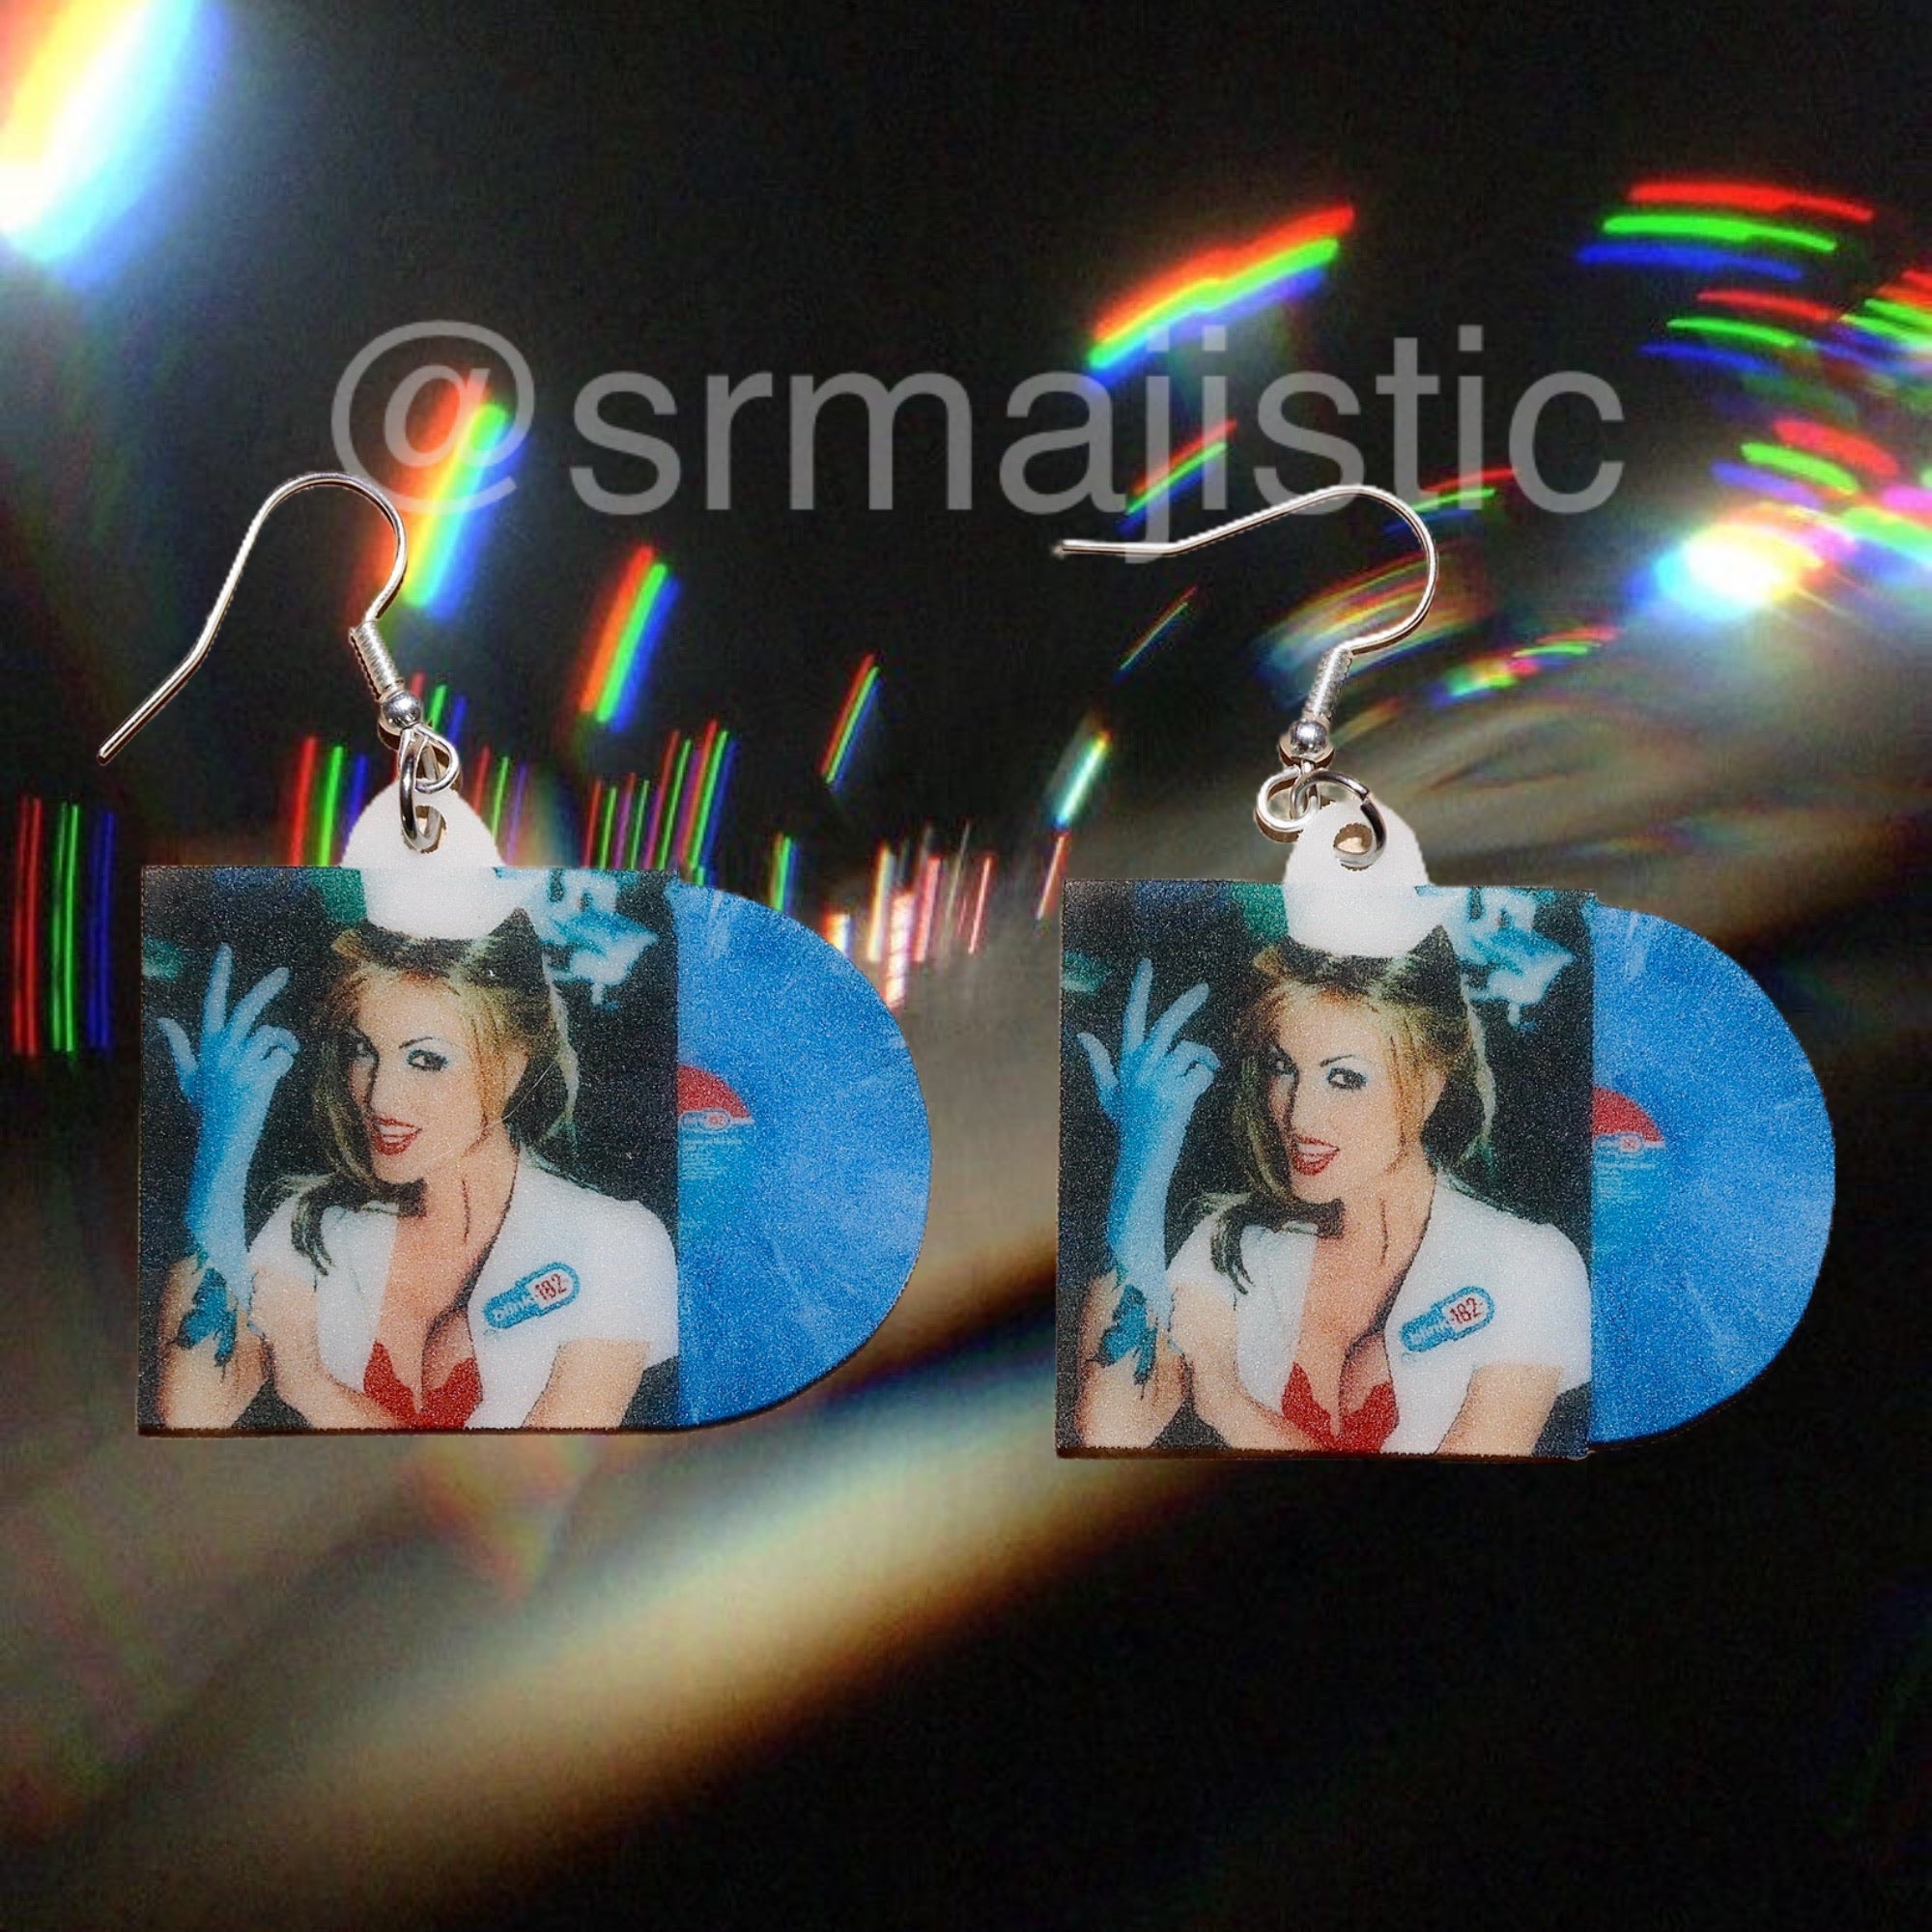 Blink 182 Enema of the State Vinyl Album Handmade Earrings!